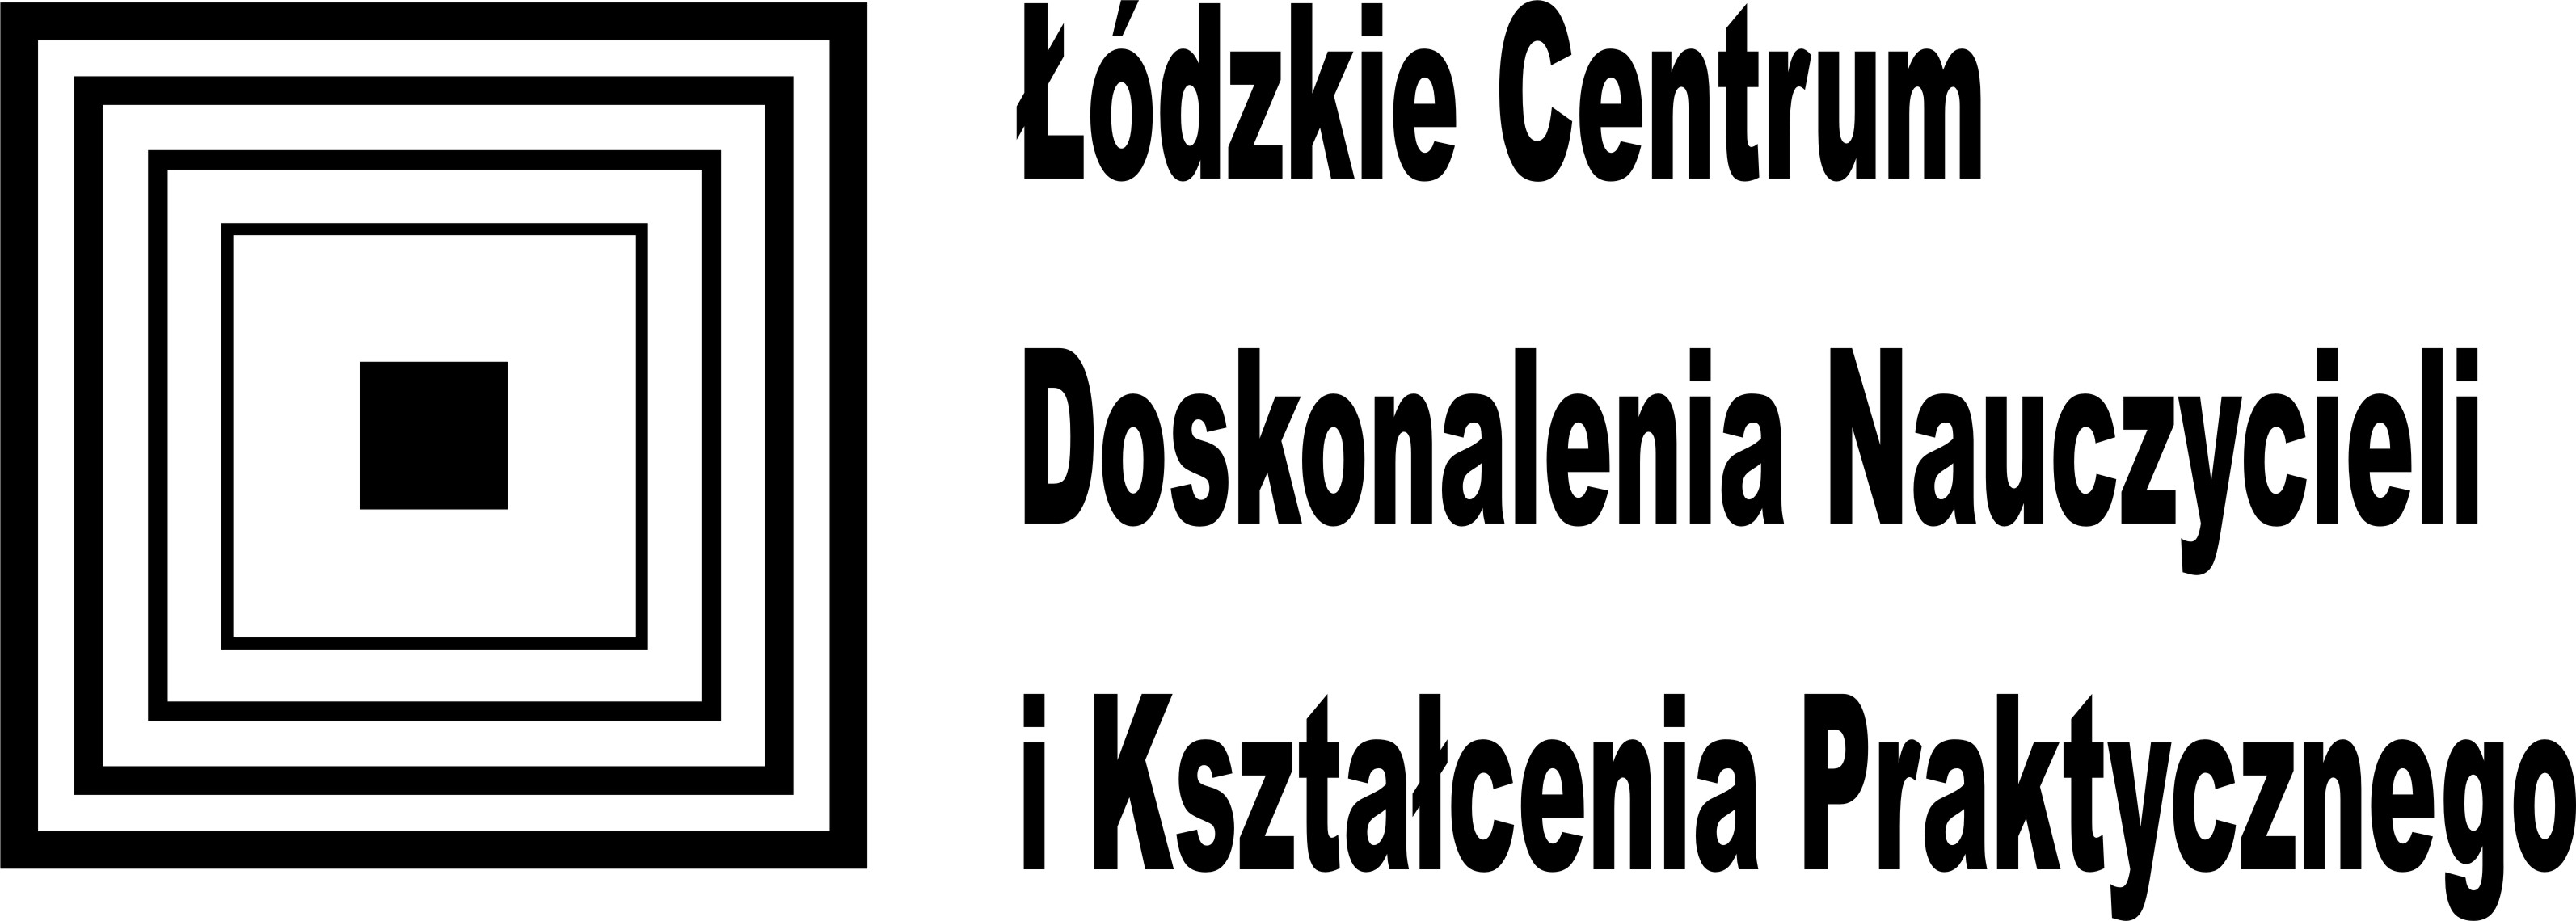 Czarne logo (kwadraty) Łódźkiego Centrum Doskonalenia Nauczycieli i Kształcenia Praktycznego